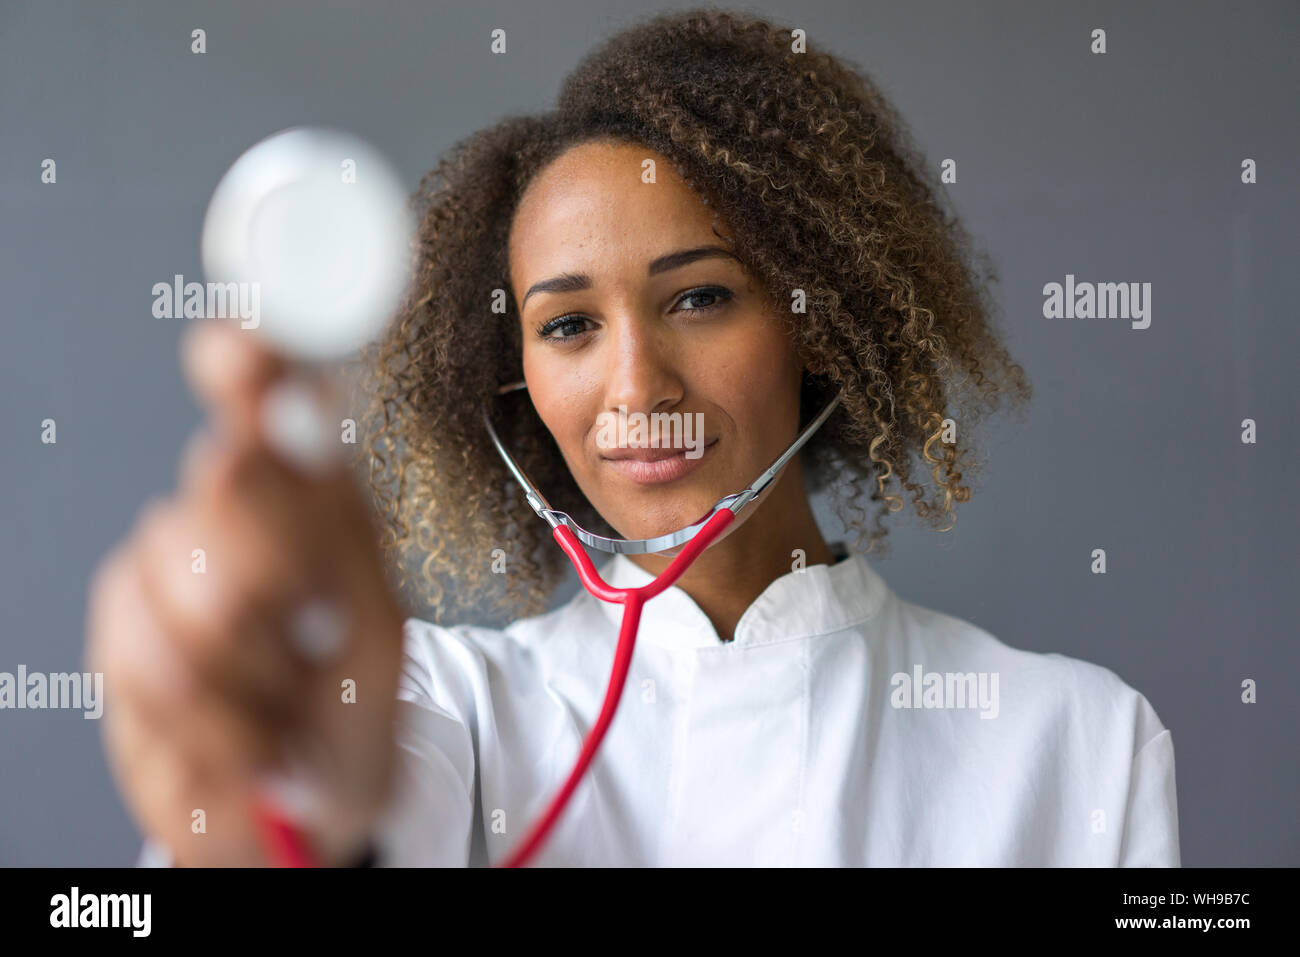 Retrato de joven médico utilizando un estetoscopio para examen Foto de stock